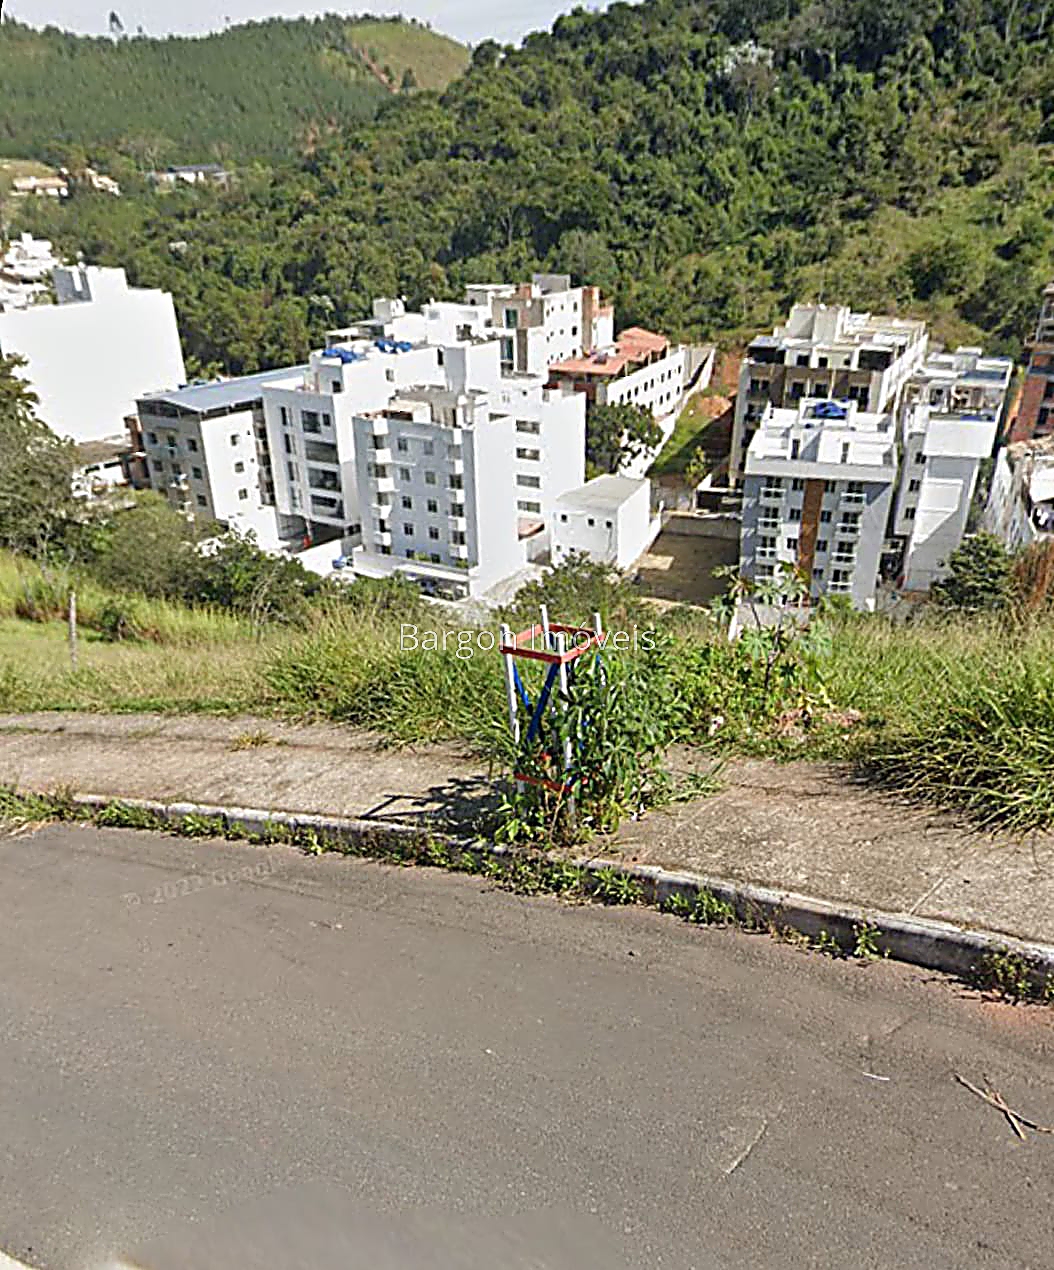 Terreno Residencial à venda em Recanto da Mata, Juiz de Fora - MG - Foto 6